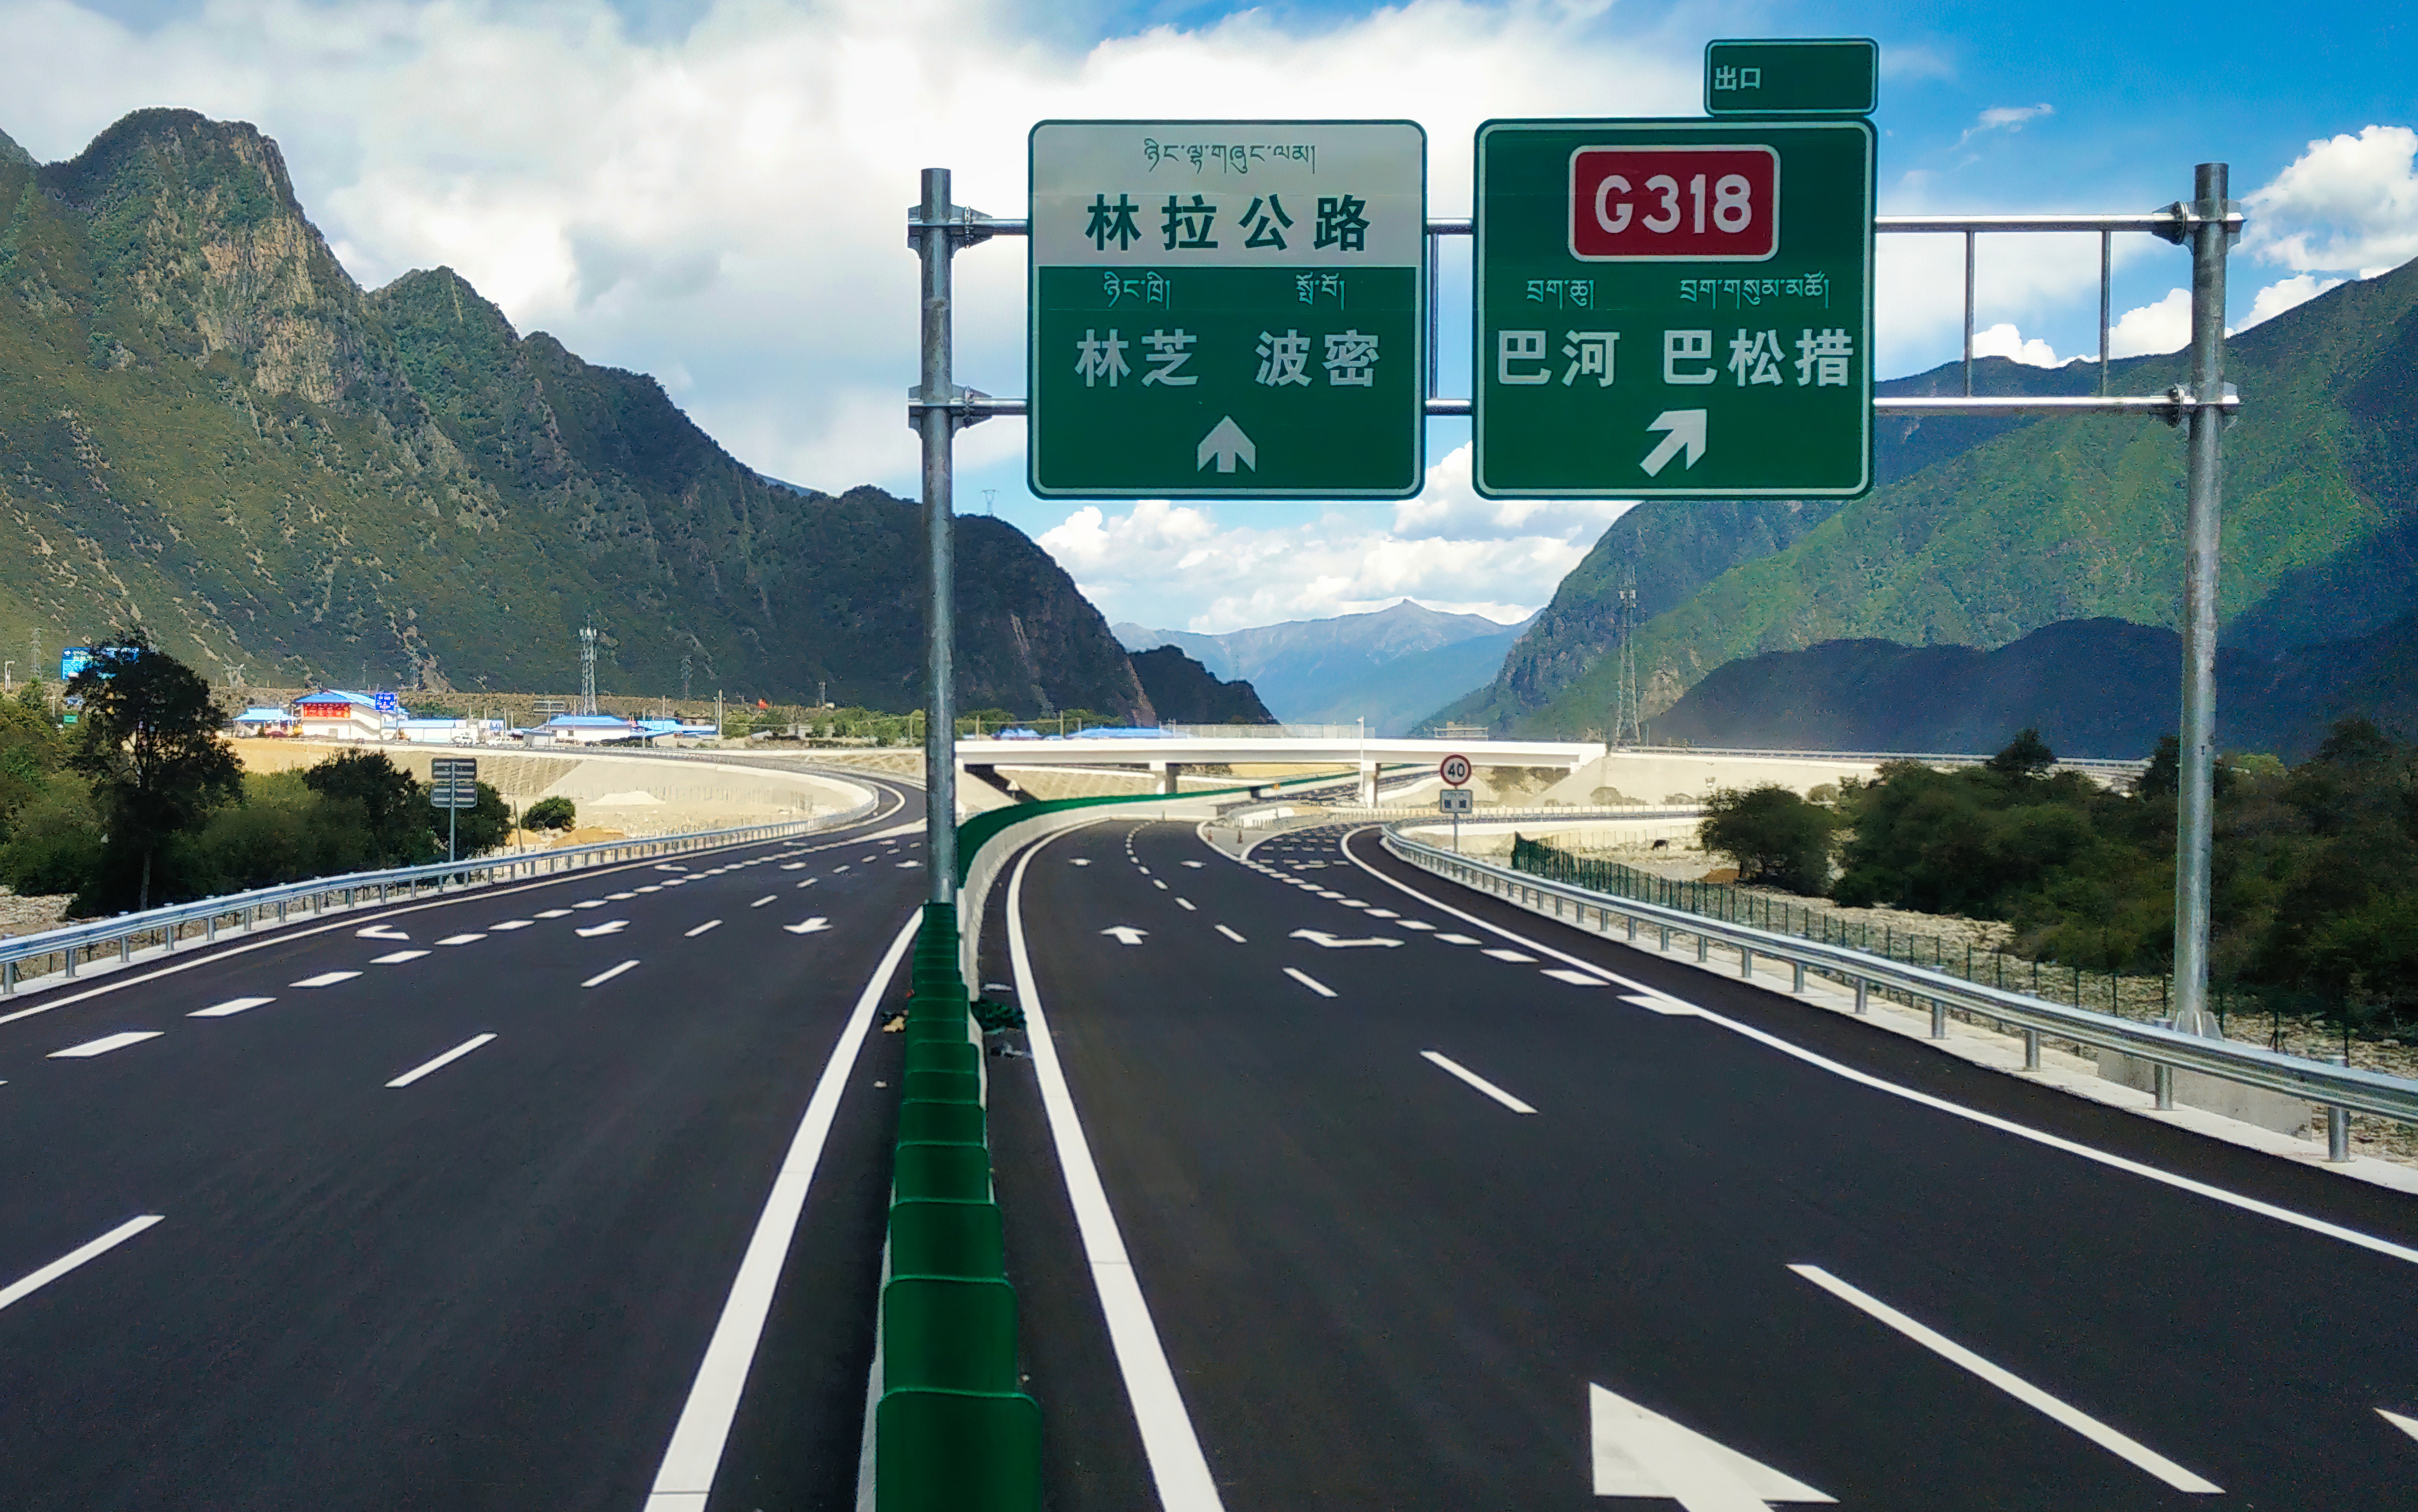 中国石化镇海炼化公司累计向社会供应沥青超过2254万吨,建设高速公路